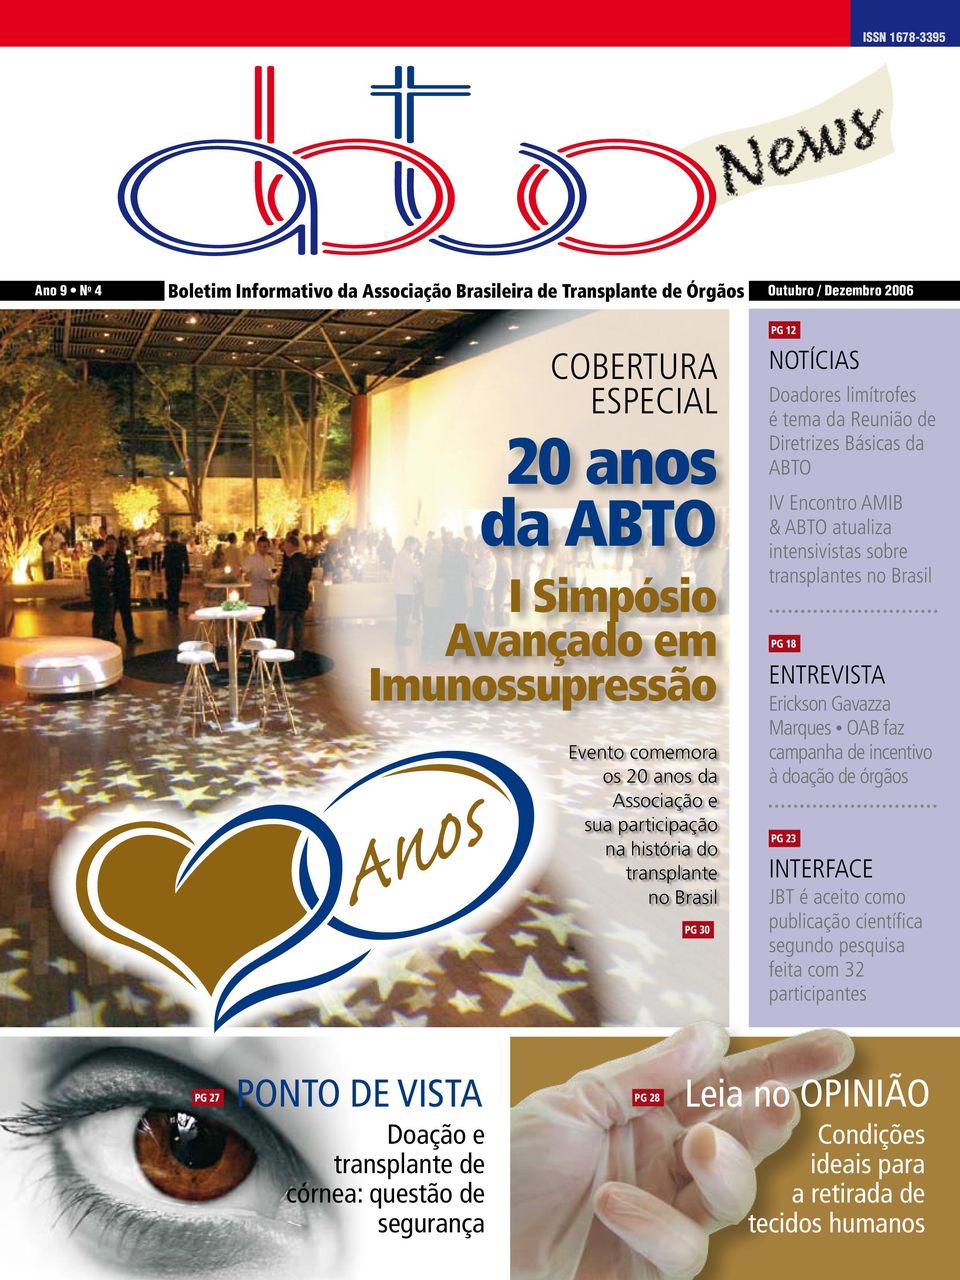 AMIB & ABTO atualiza intensivistas sobre transplantes no Brasil PG 18 ENTREVISTA Erickson Gavazza Marques OAB faz campanha de incentivo à doação de órgãos PG 23 INTERFACE JBT é aceito como